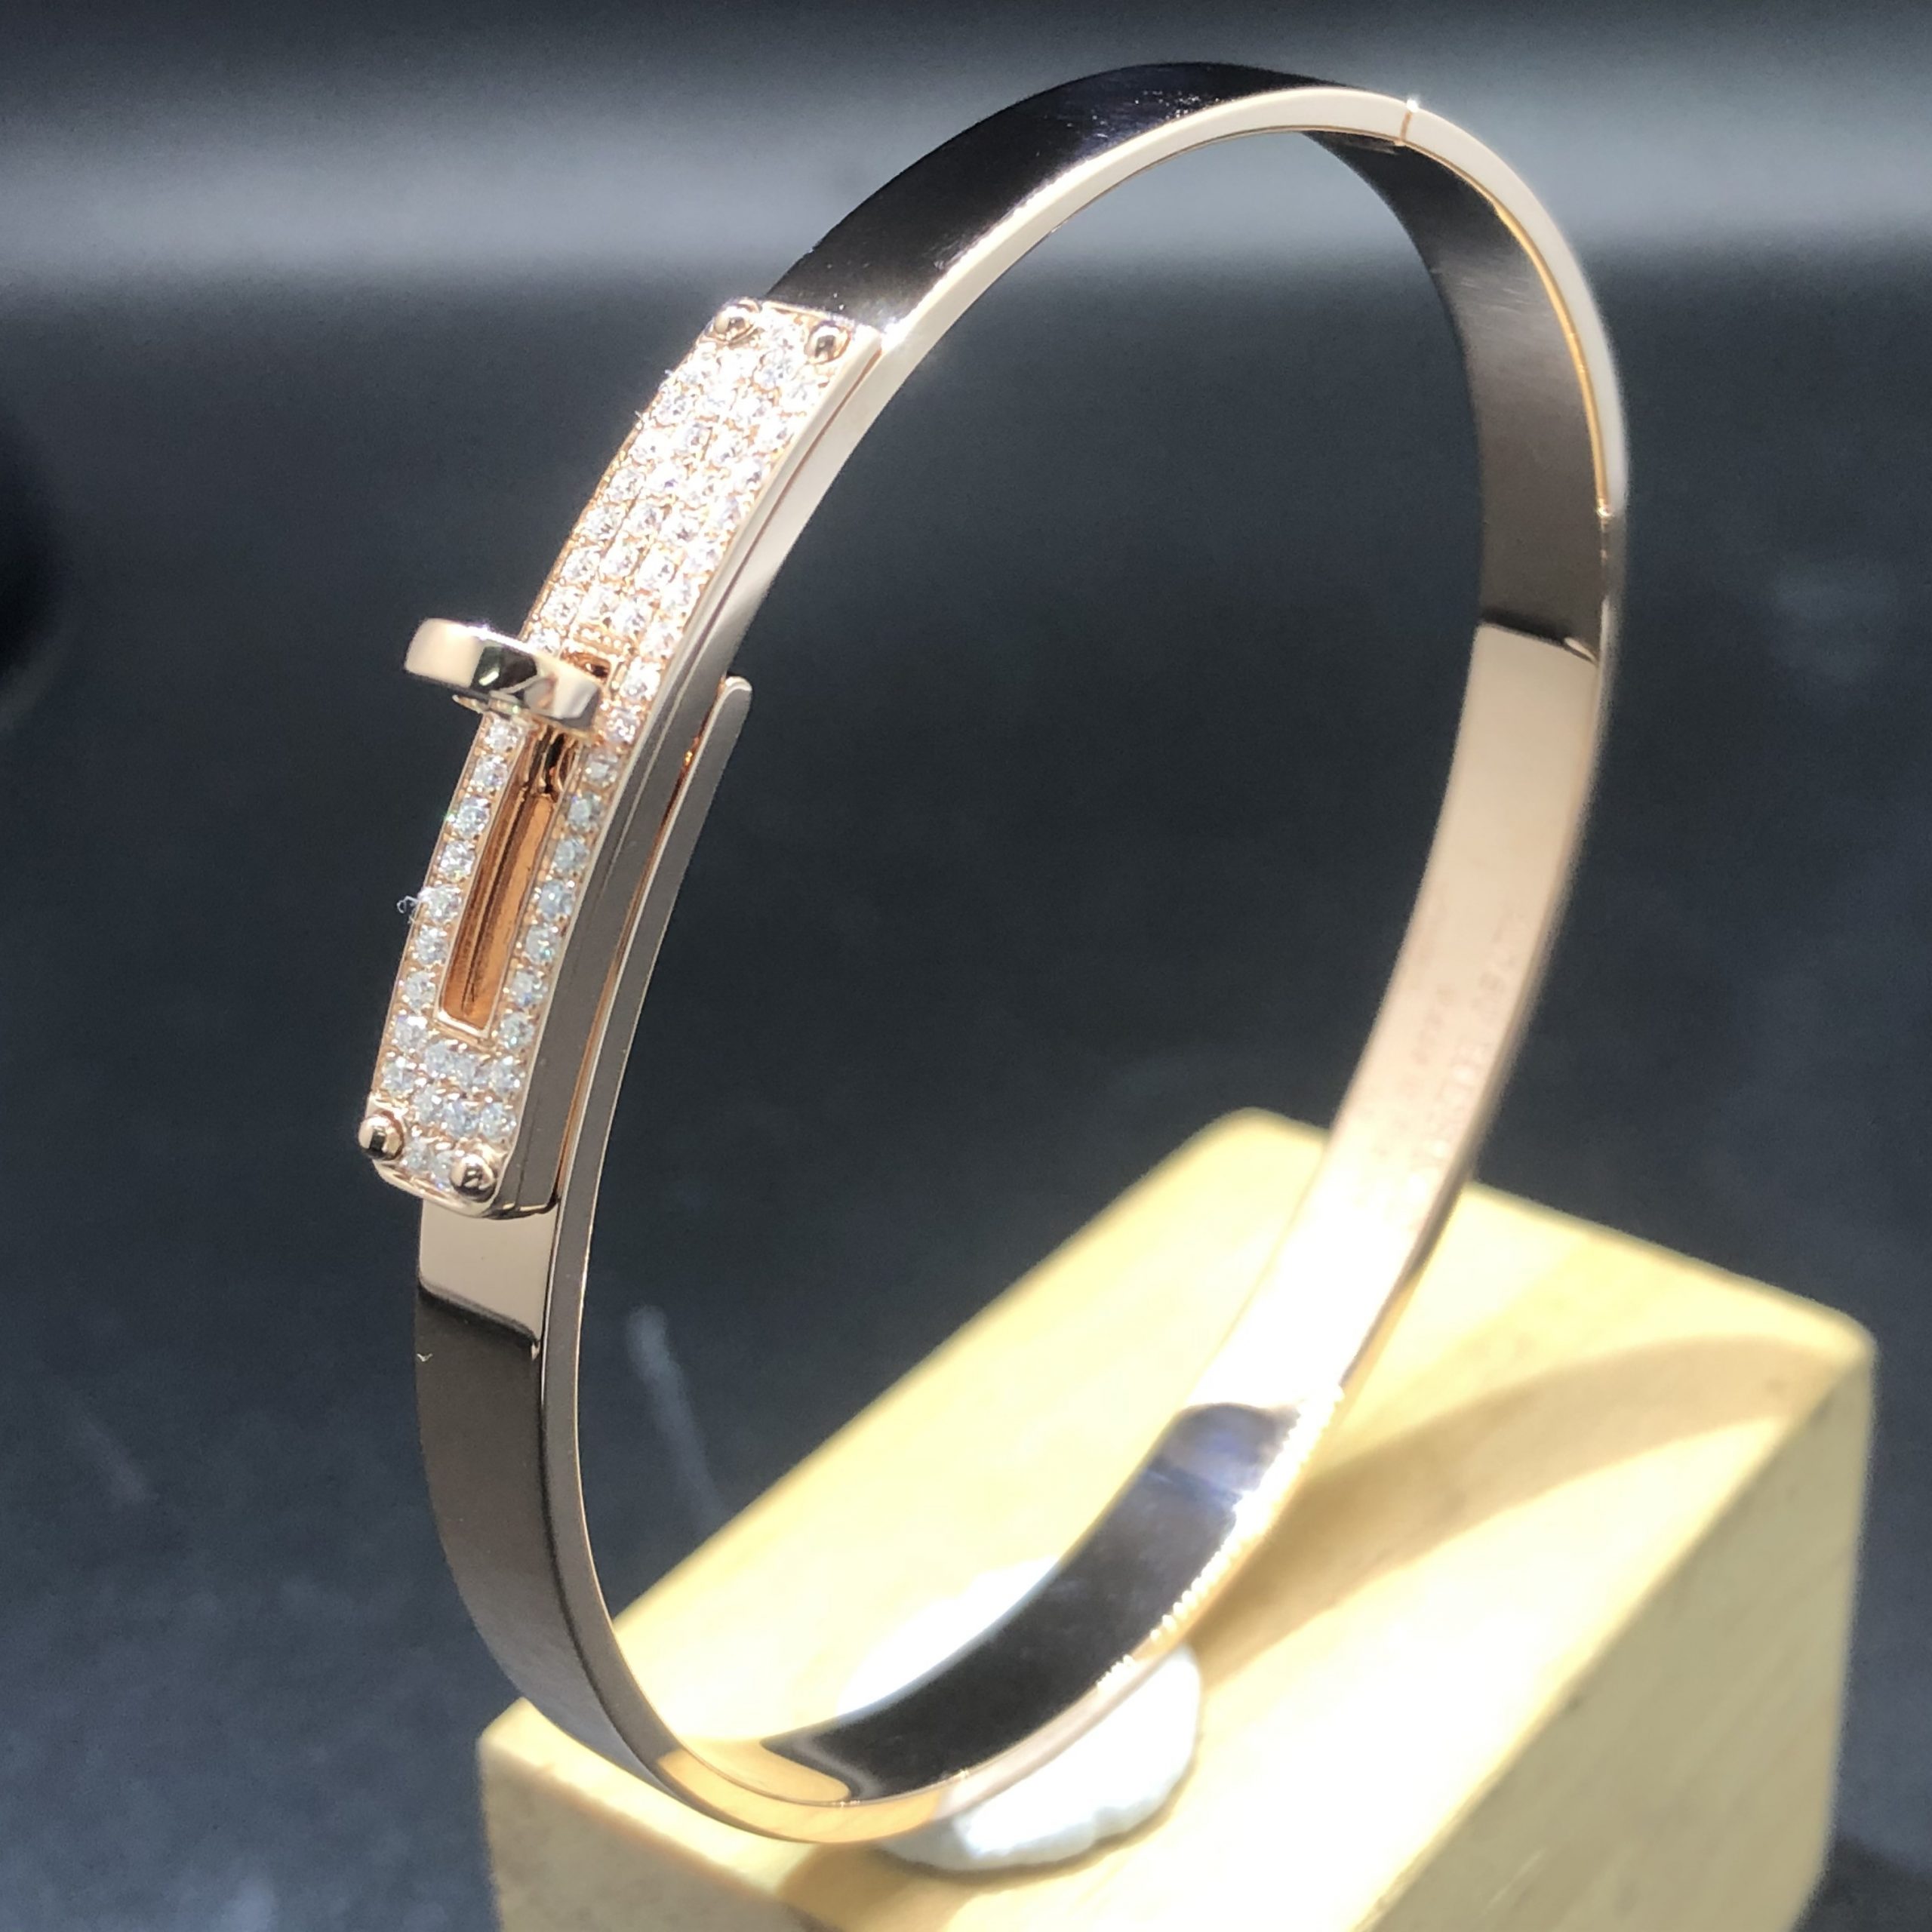 Hermes Kelly Bracelet Custom Made in 18K Rose Gold with 57 Diamonds,Small Model